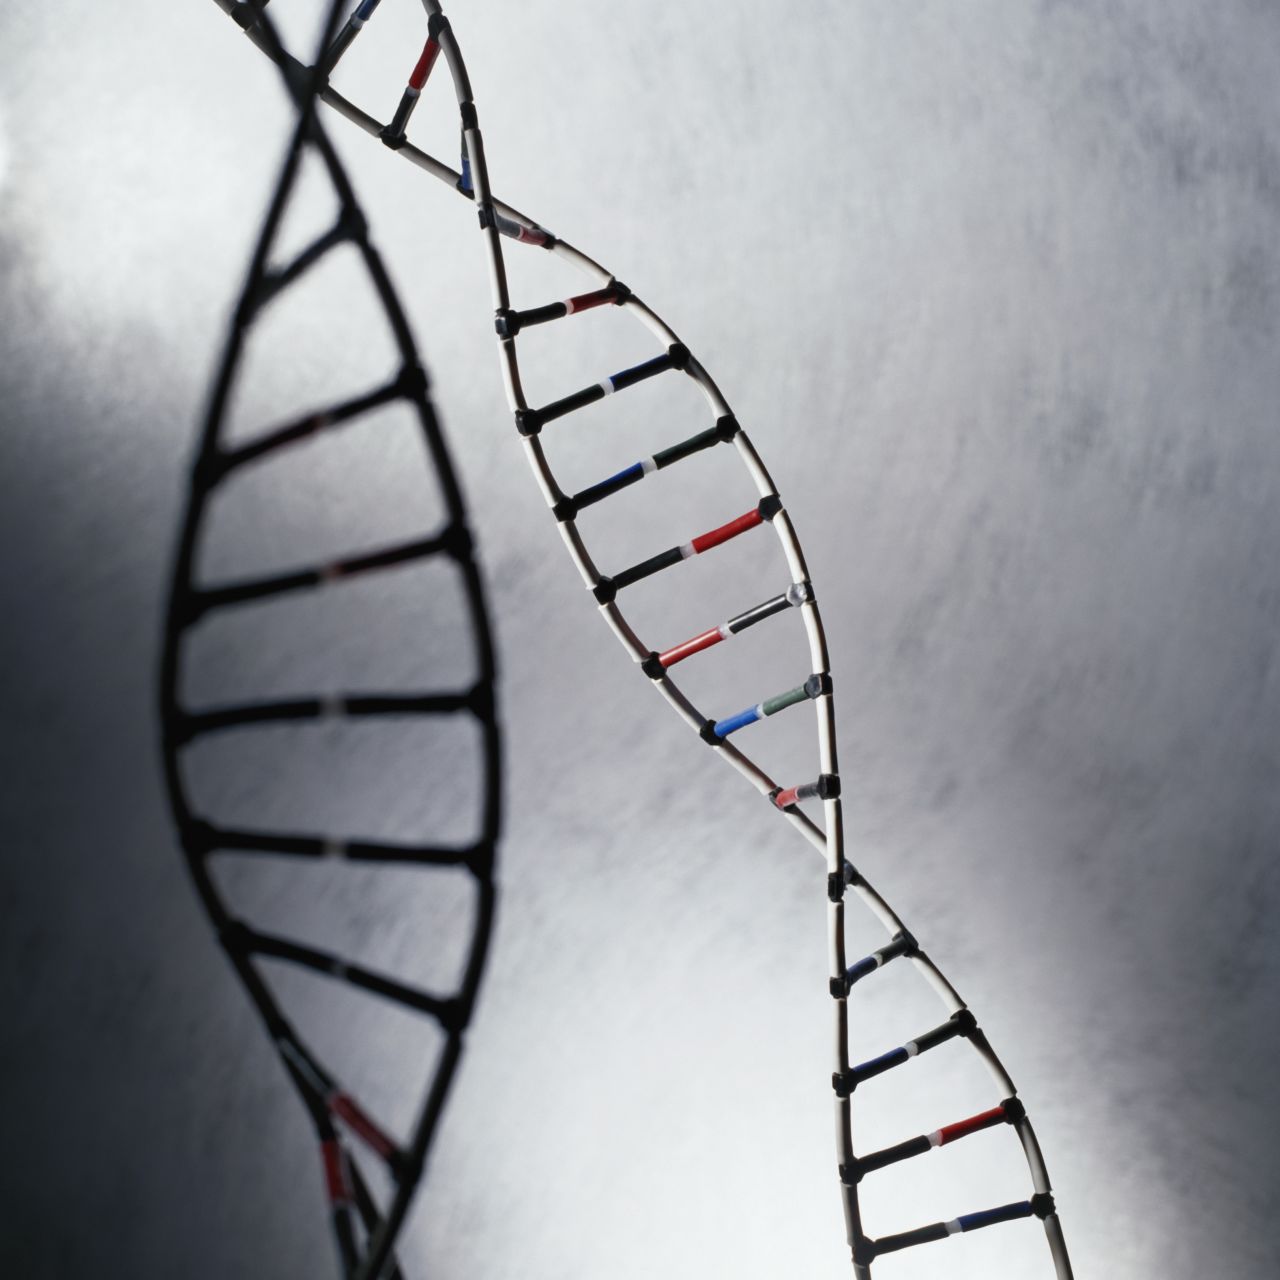 El ADN está compuesto de solo cuatro bases: A,C,T, y G. Ellas codifican toda la información genética en estructuras filiformes llamadas cromosomas.